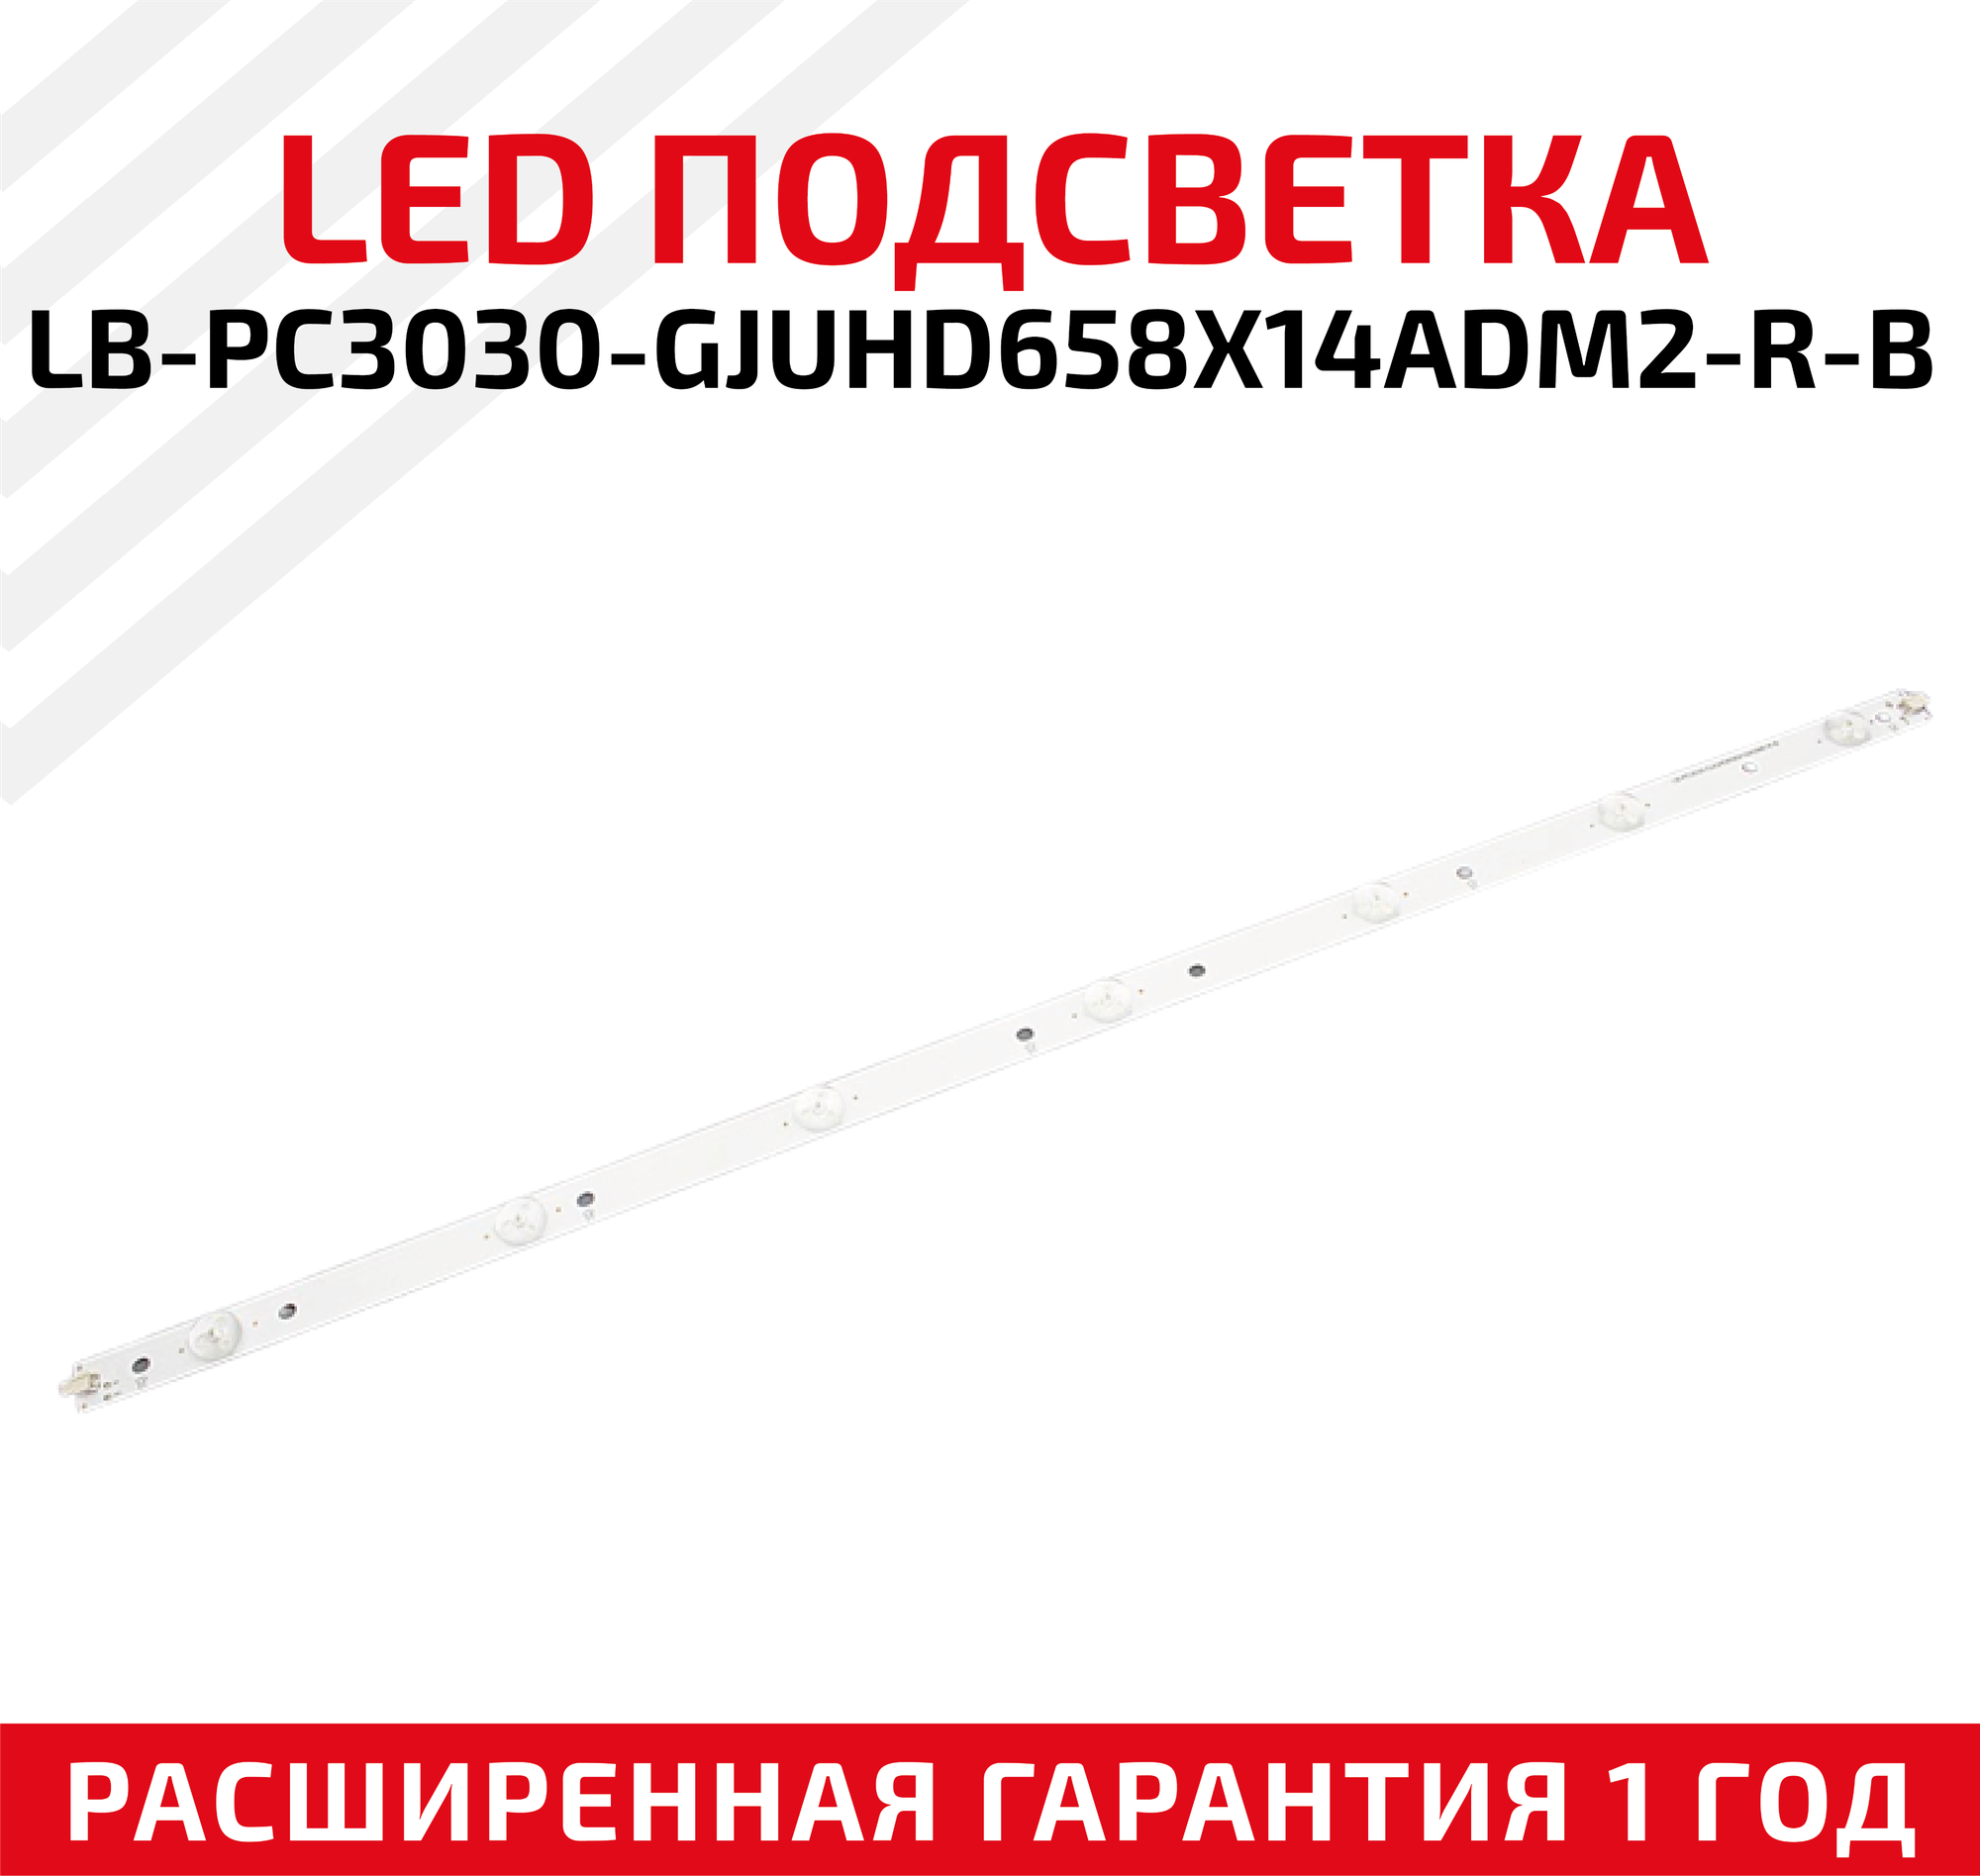 LED подсветка (светодиодная планка) для телевизора LB-PC3030-GJUHD658X14ADM2-R-B